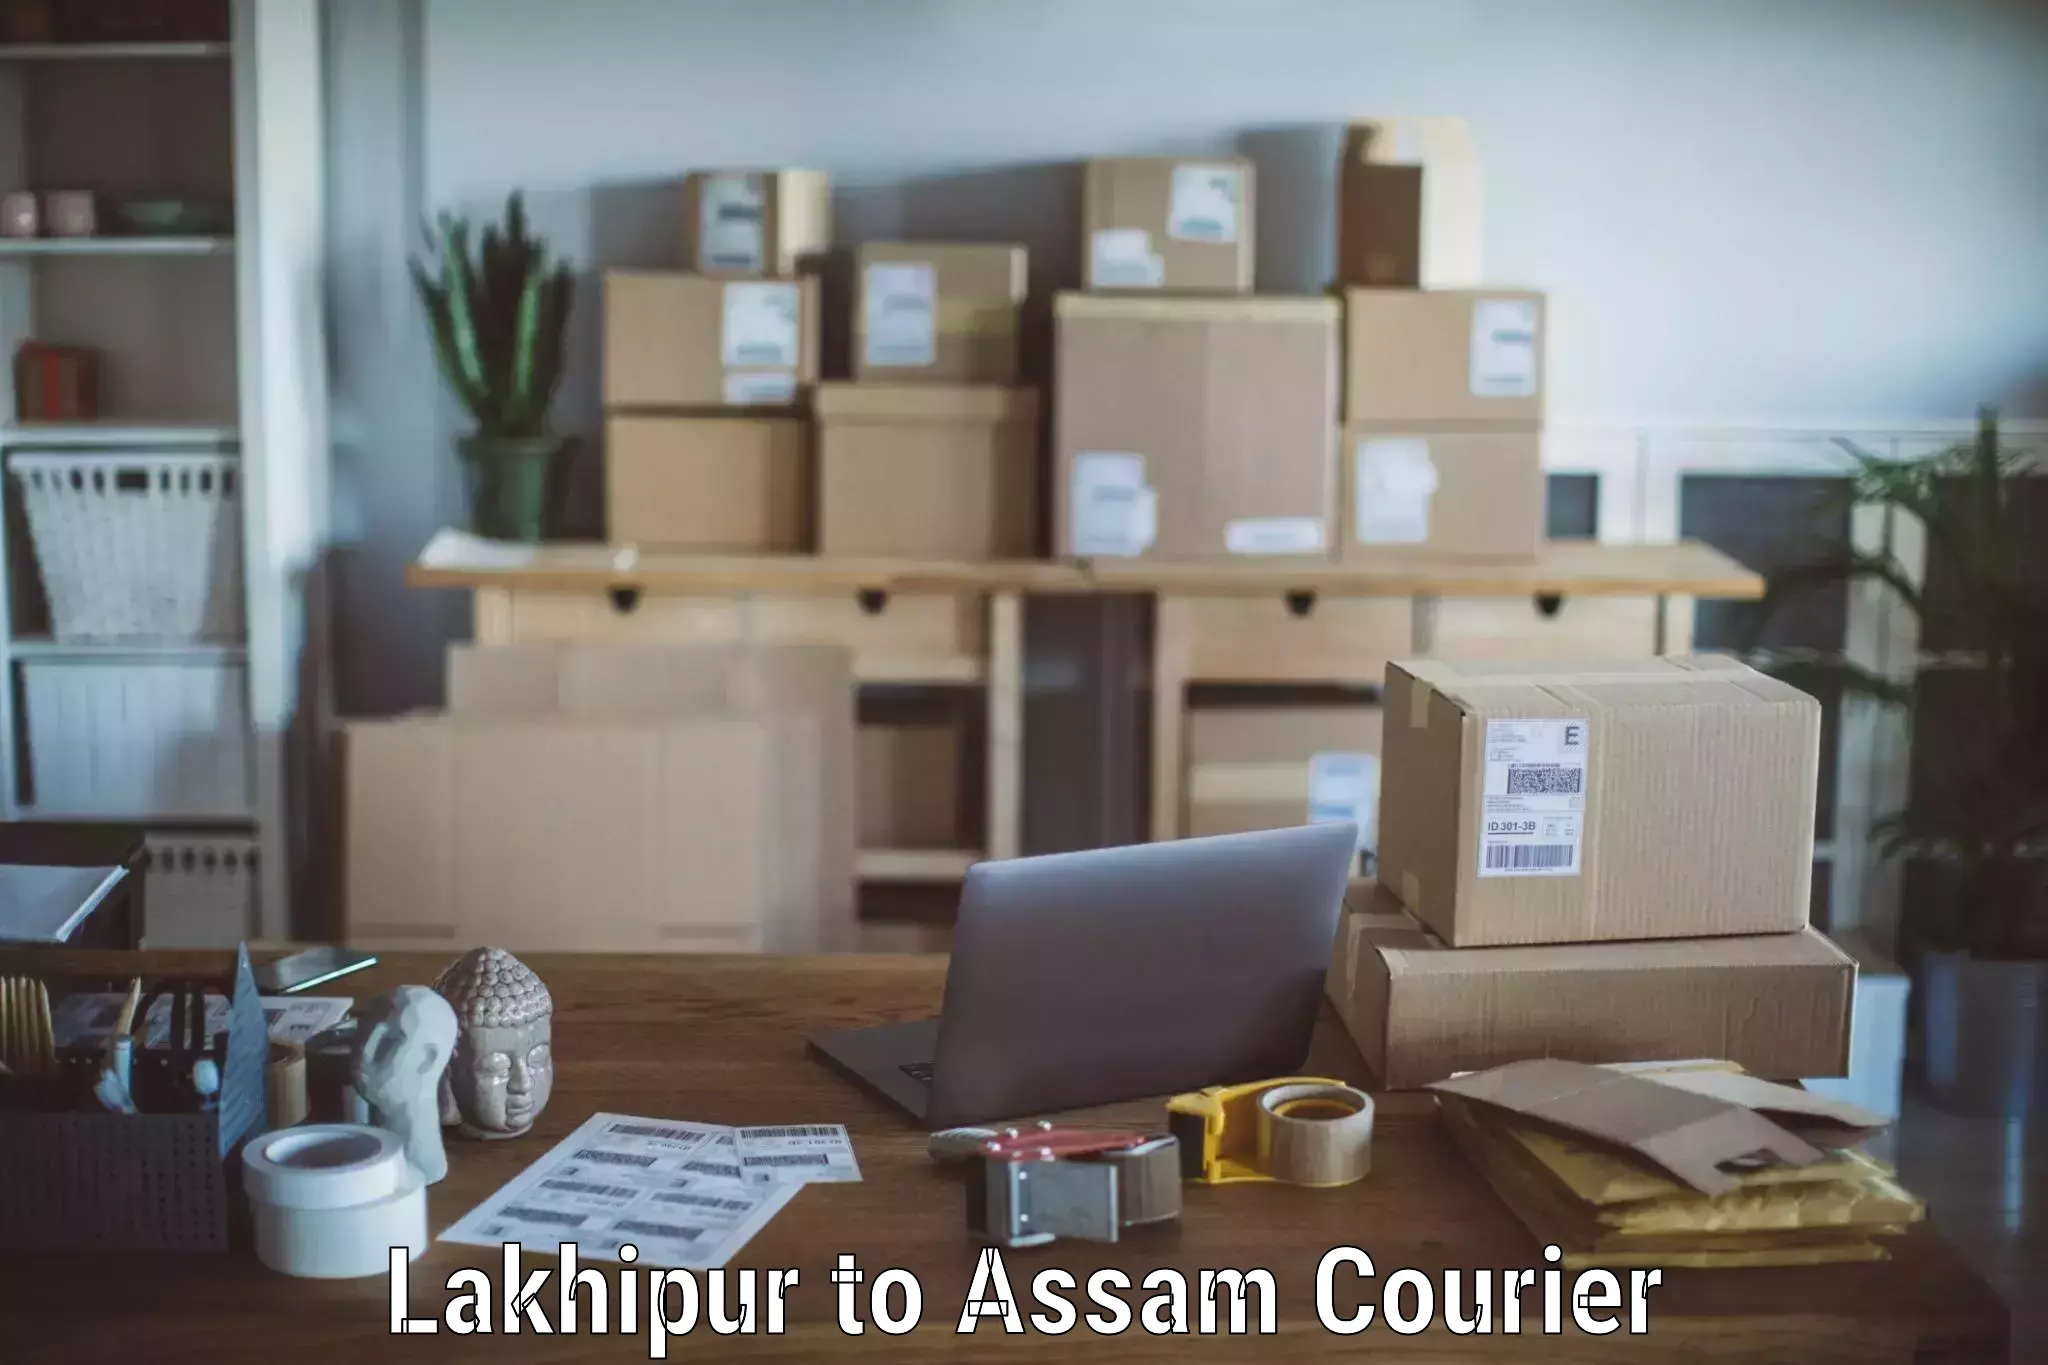 Professional furniture movers Lakhipur to Dhupdhara